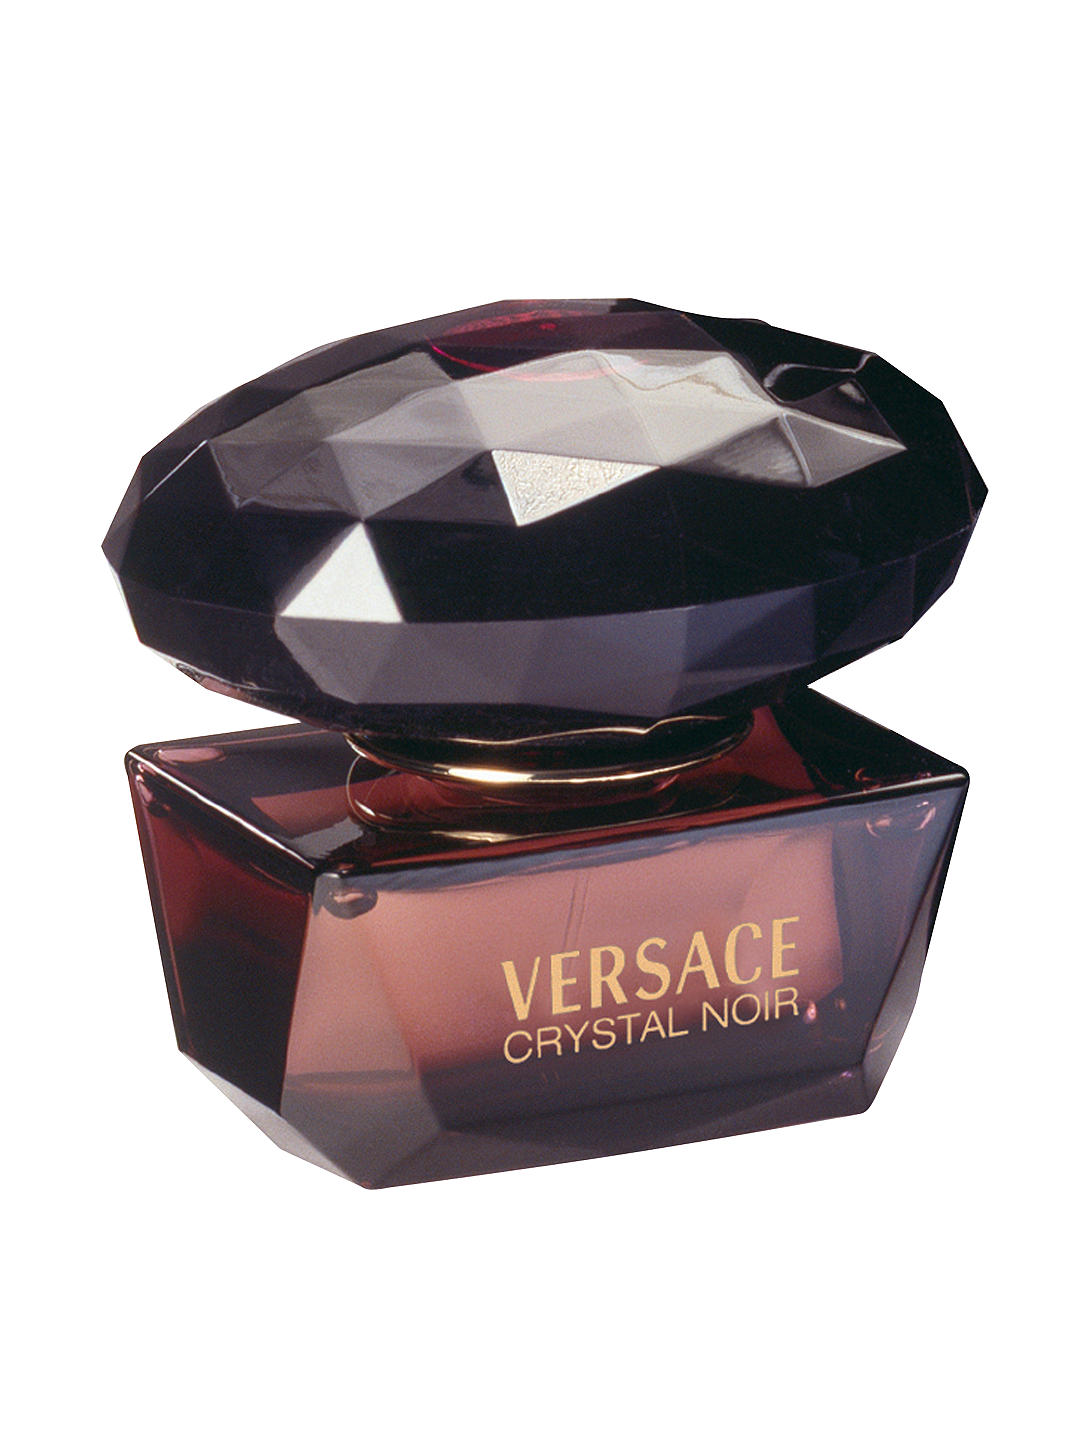 Versace Crystal Noir Eau de Toilette, 50ml 1